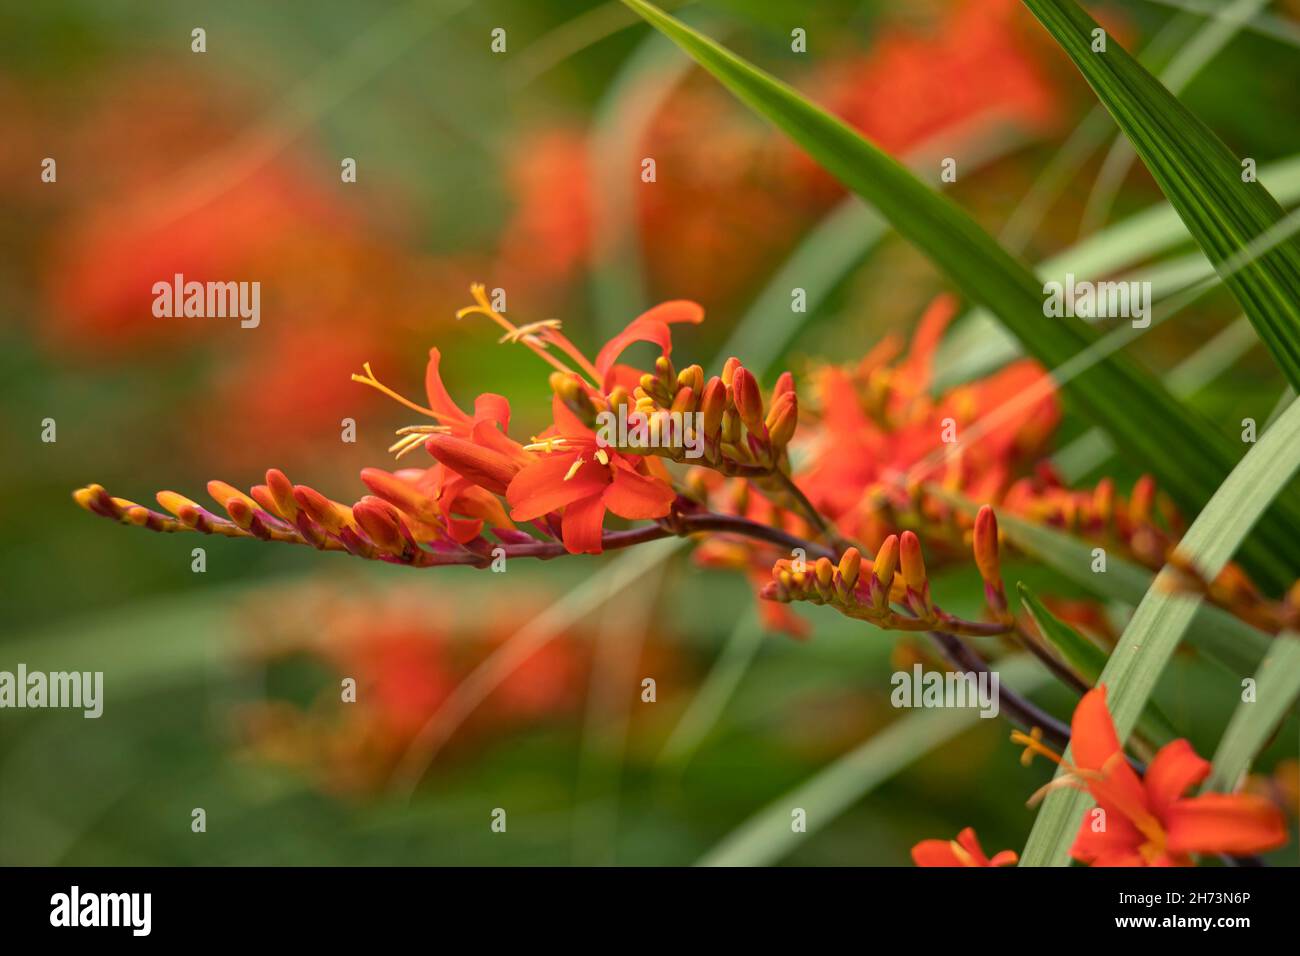 Closeup of Crocosmia 'ellenbank skylark' in garden in summer Stock Photo